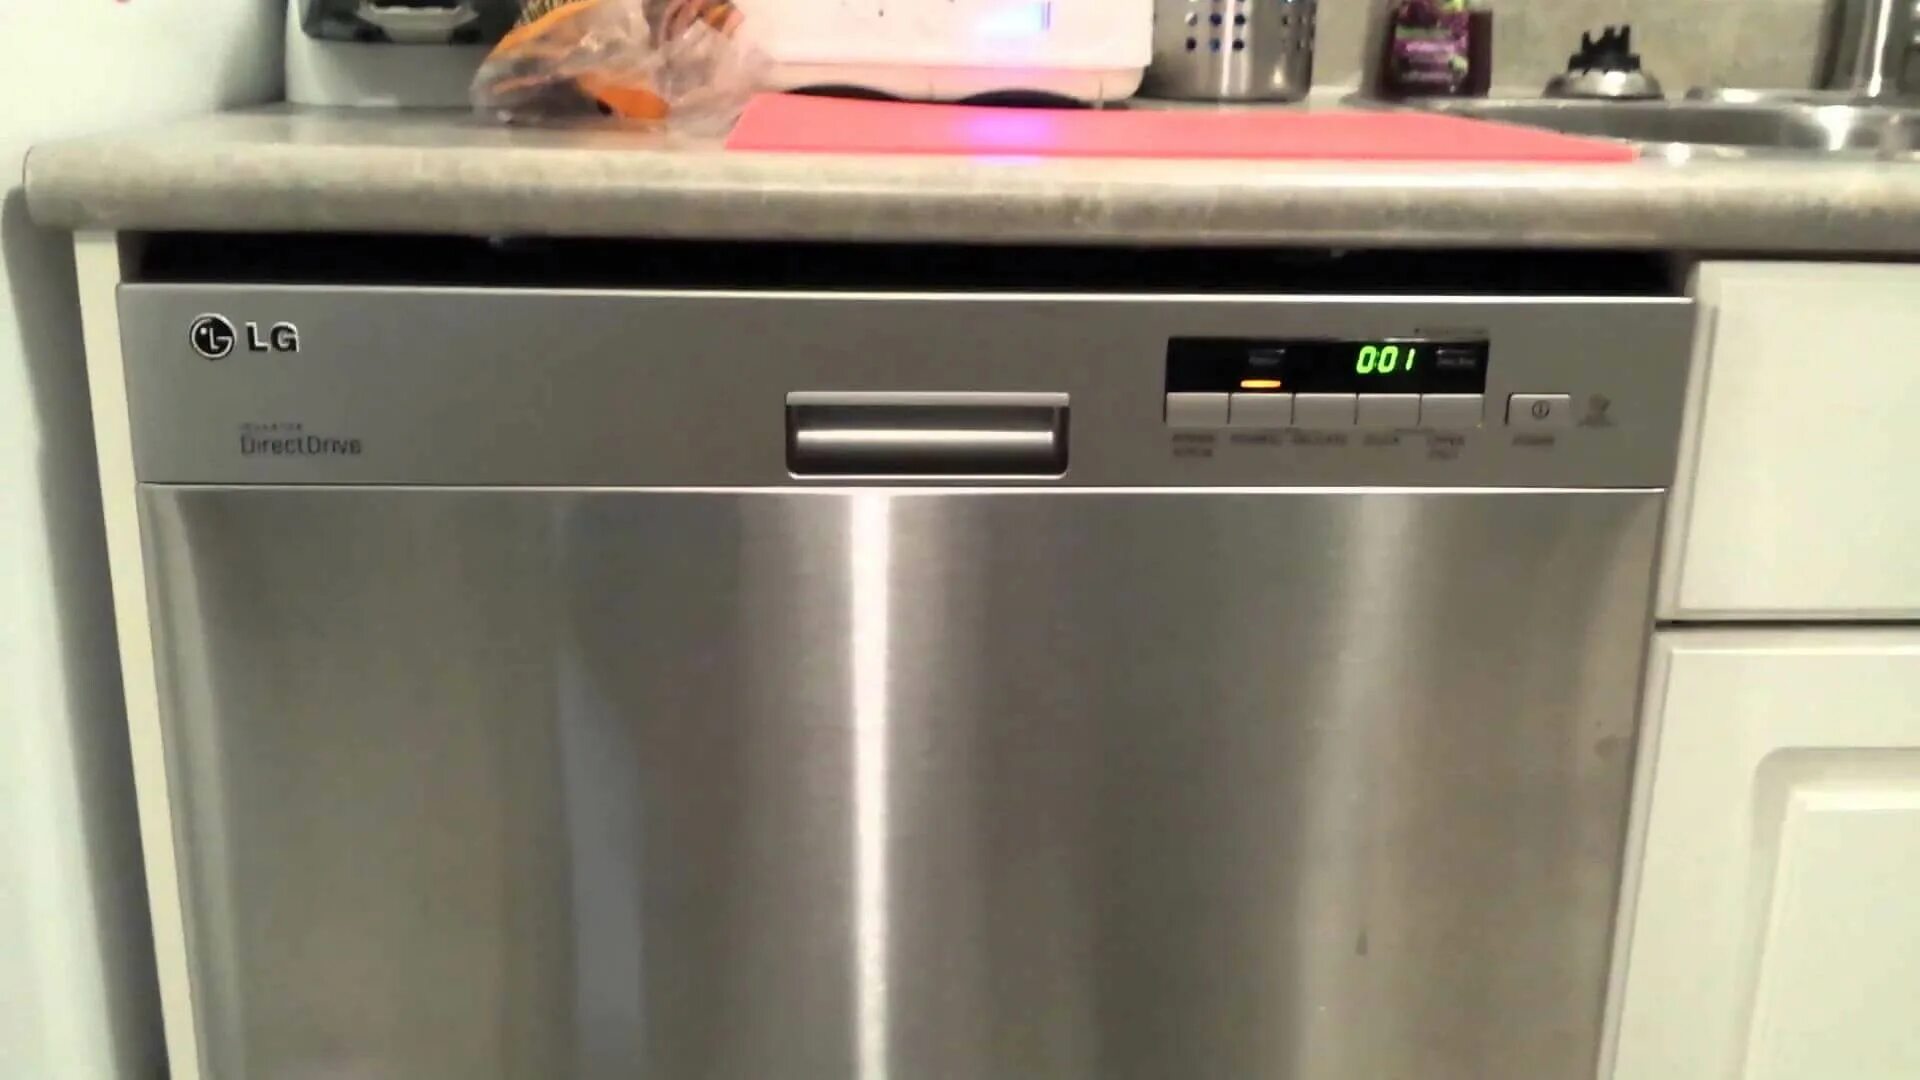 Окпд посудомоечная машина. Посудомоечная машина LG D-1452wf. Ldt5665bd LG Dishwasher Price. Старая посудомойка LG. Посудомоечная машина LG табло.